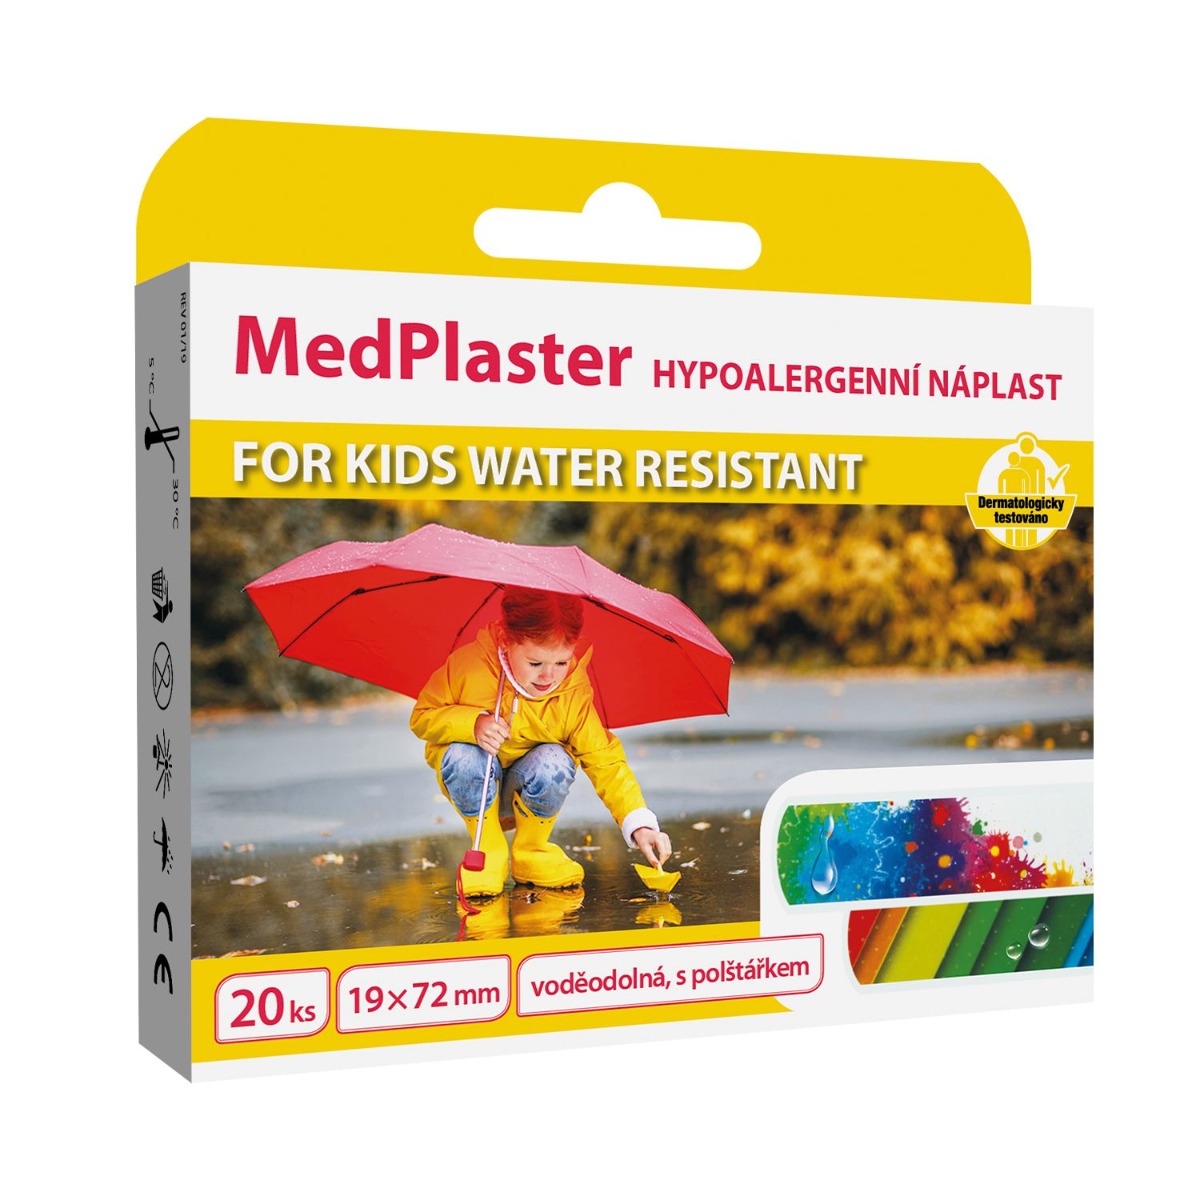 MedPlaster Náplast FOR KIDS water resistant 19x72 mm 20 ks MedPlaster